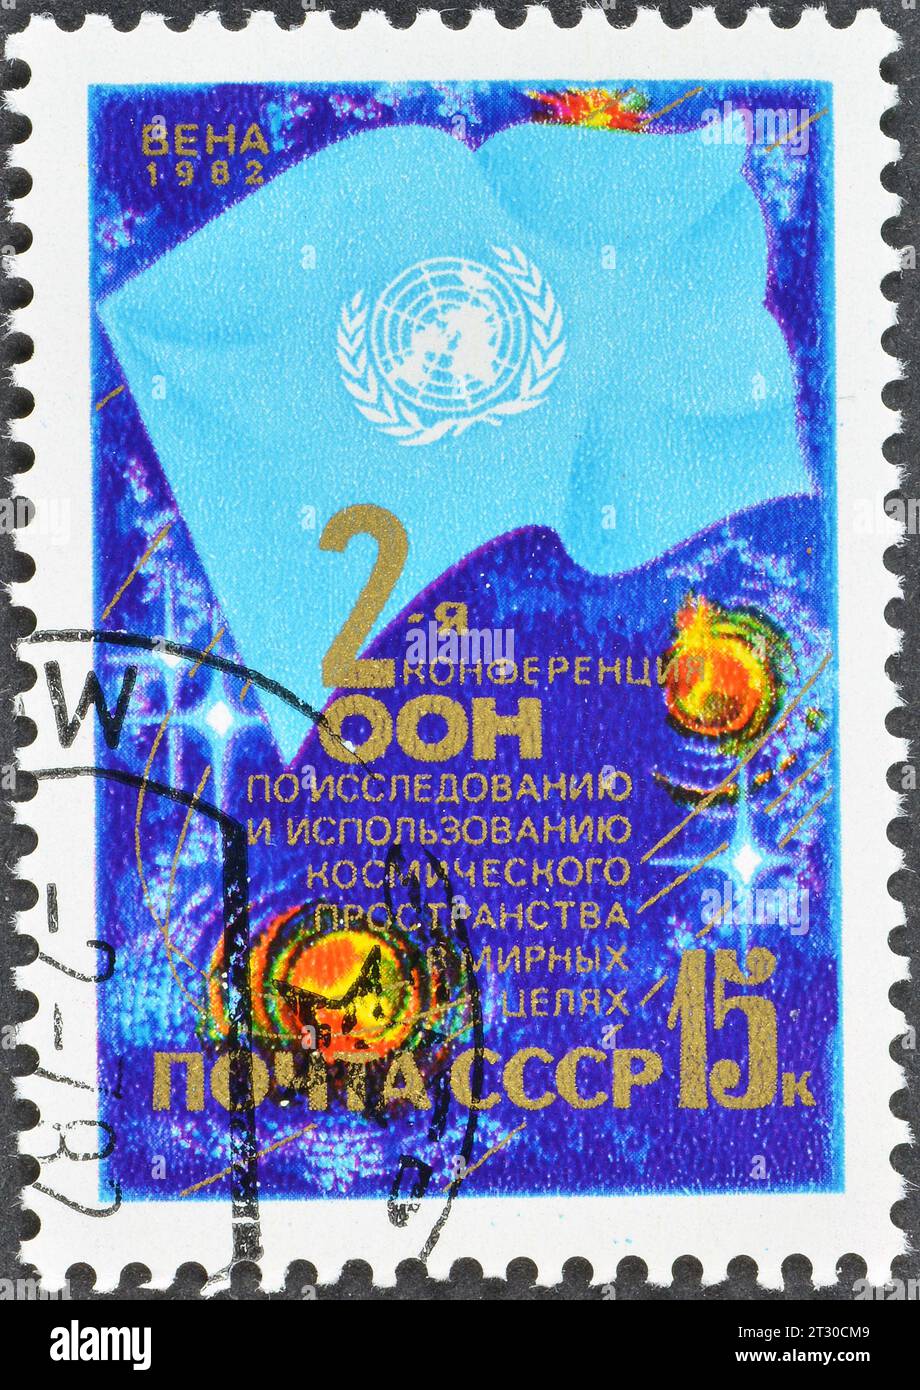 Francobollo cancellato stampato dall'URSS, che promuove la seconda Conferenza delle Nazioni Unite sull'esplorazione dello spazio, intorno al 1982. Foto Stock